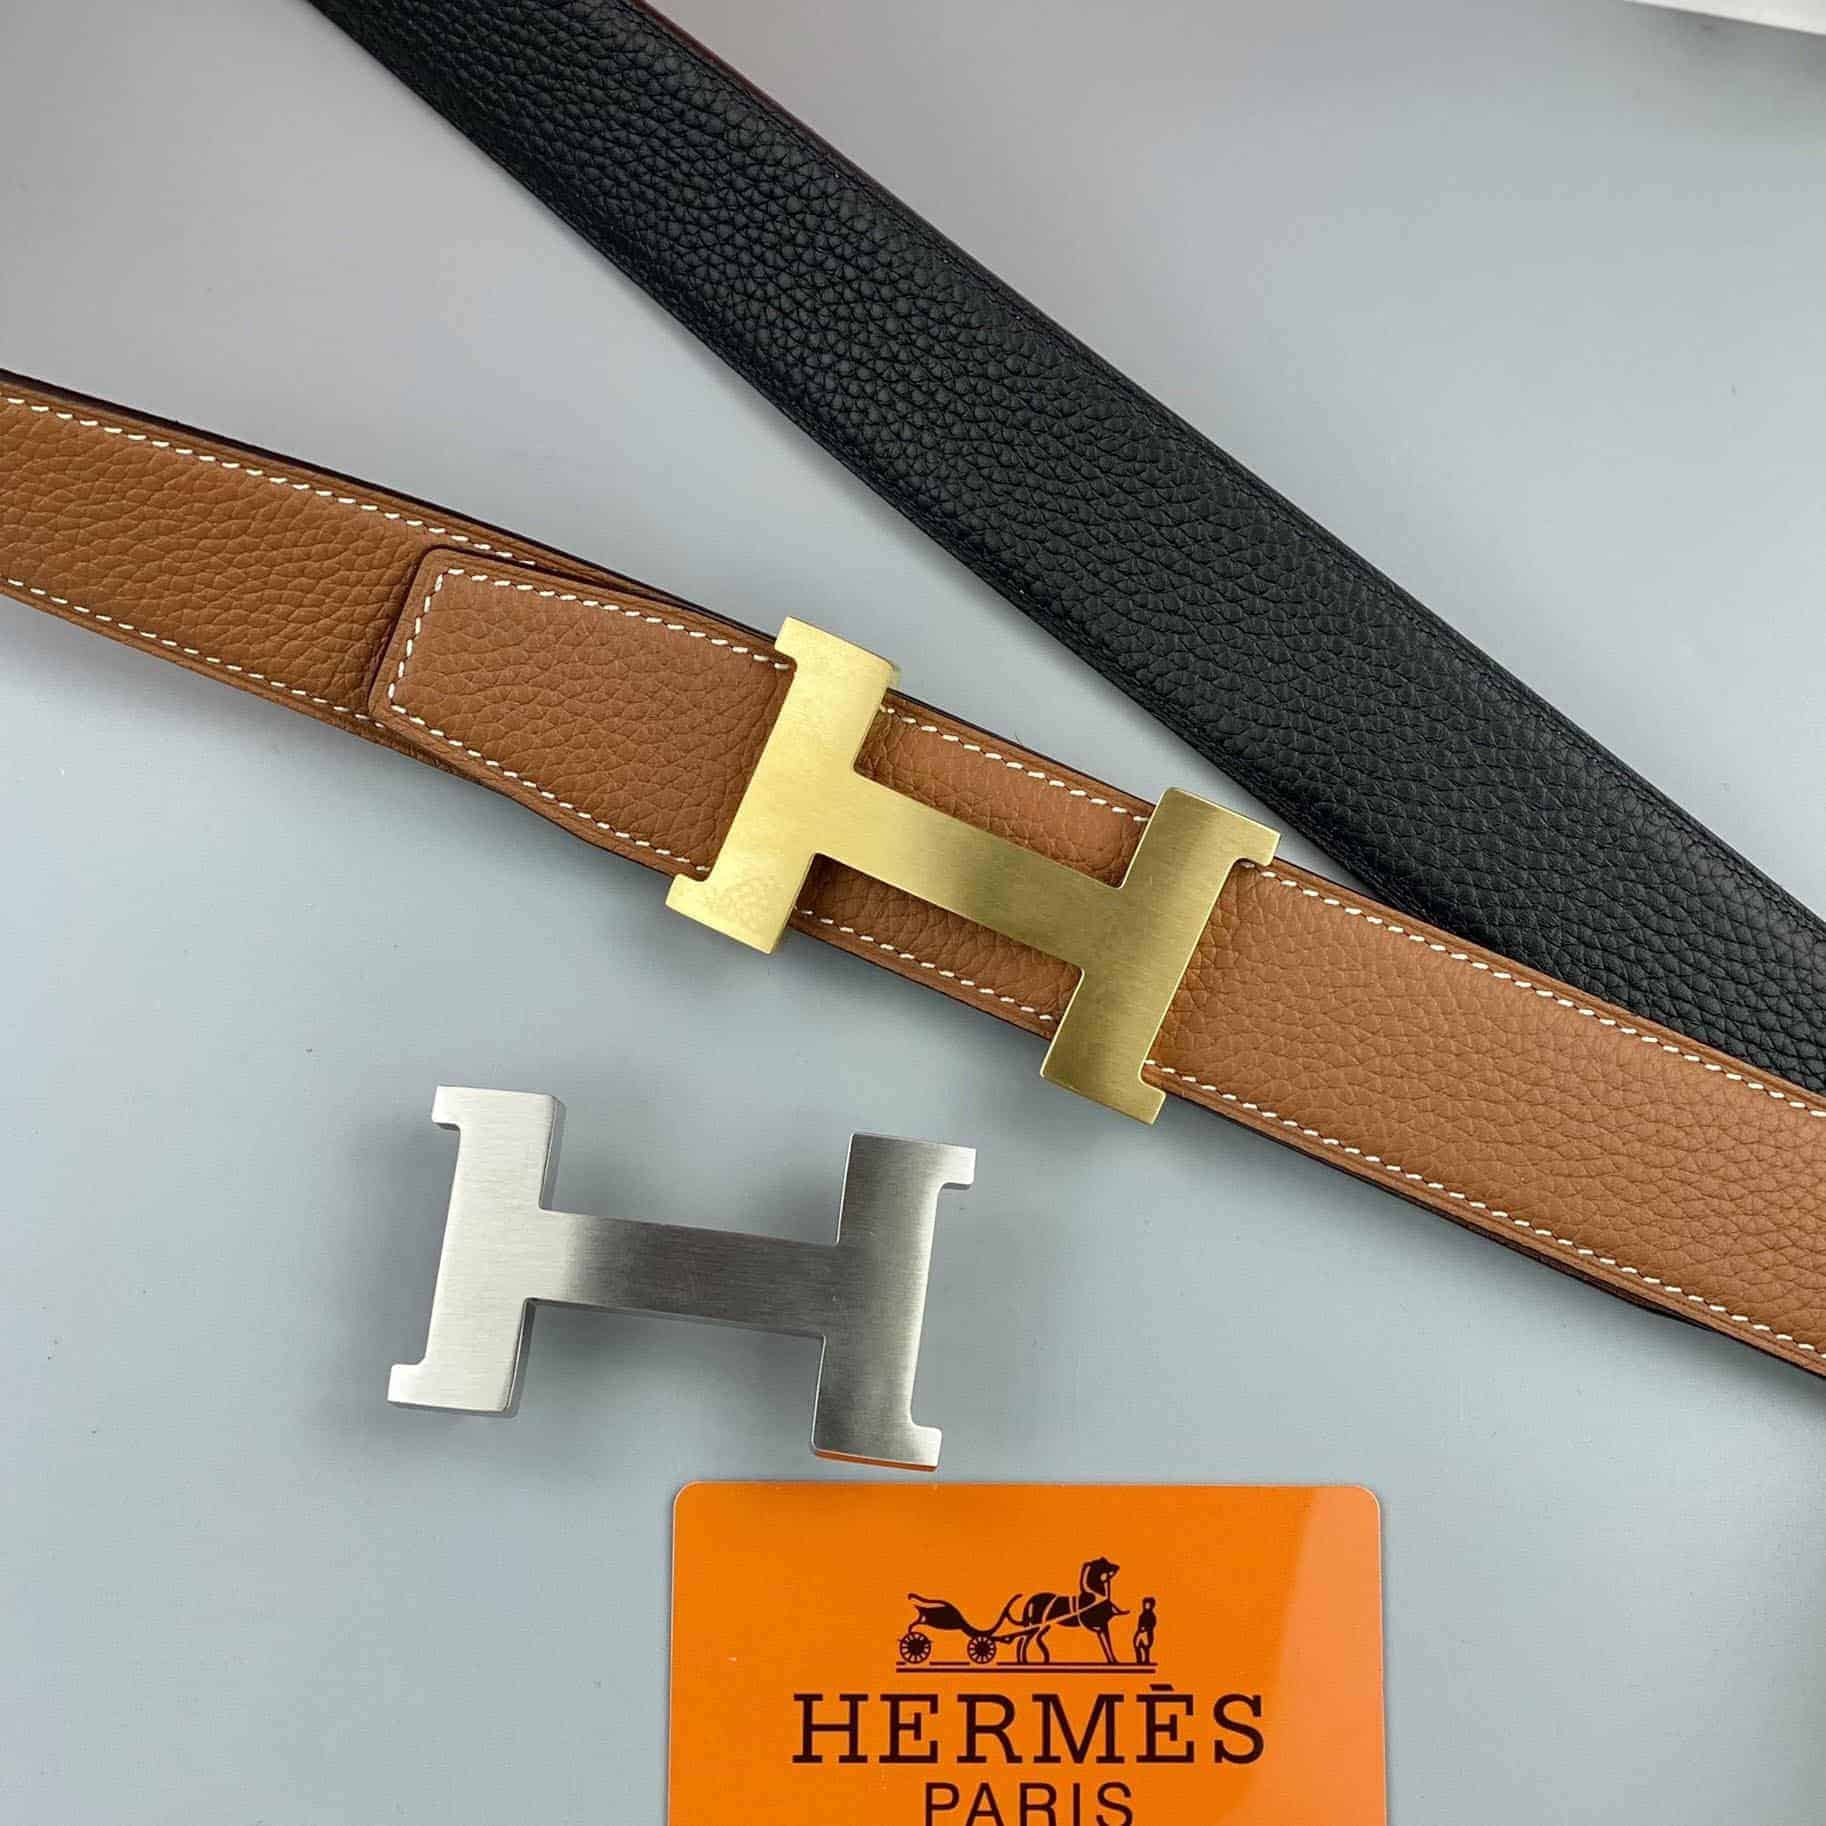 Tại sao nên sử dụng dây lưng Hermes hàng authentic?